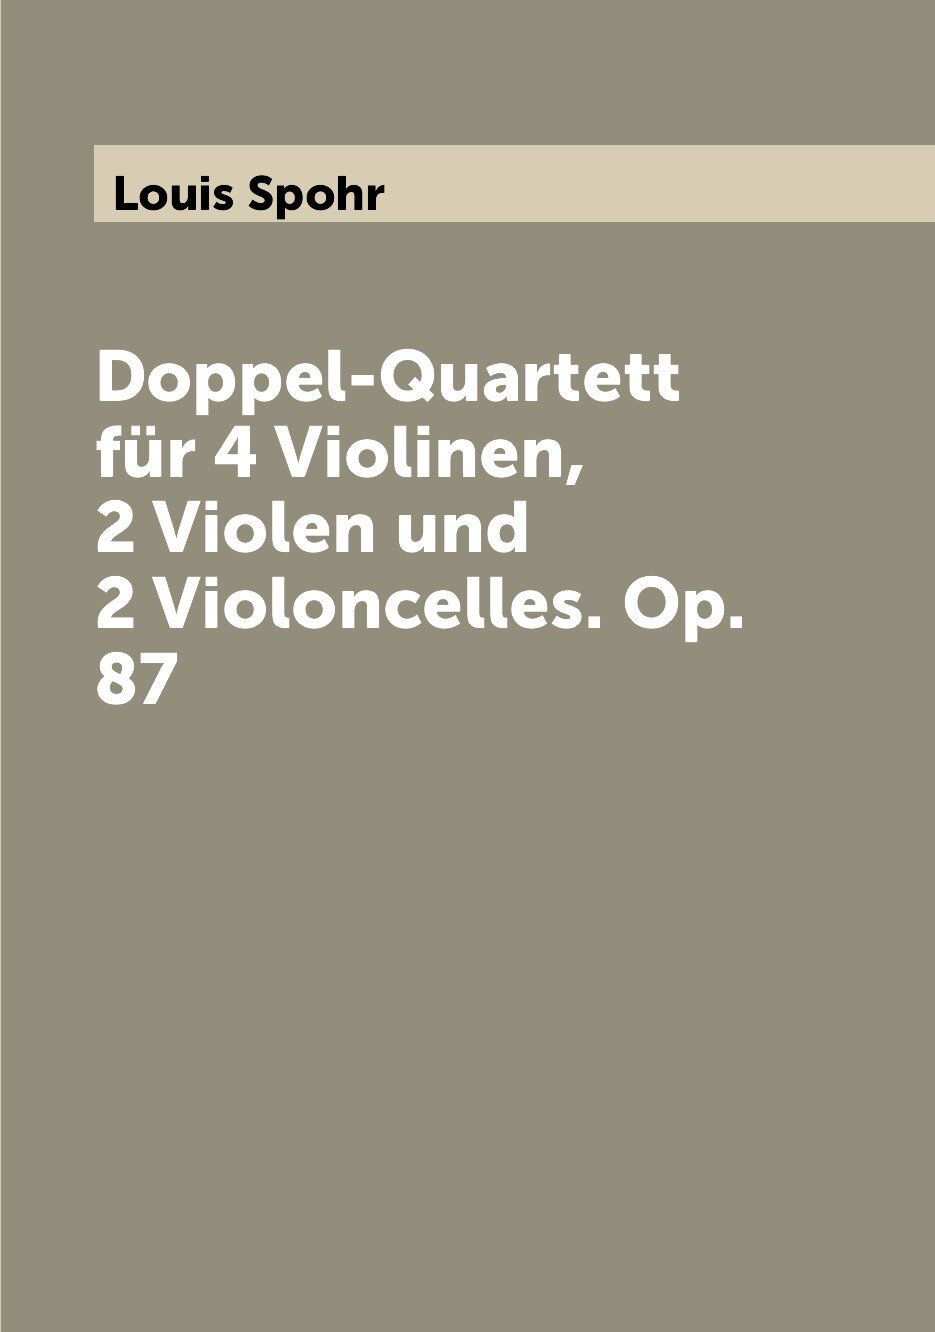 Doppel-Quartett für 4 Violinen 2 Violen und 2 Violoncelles. Op. 87